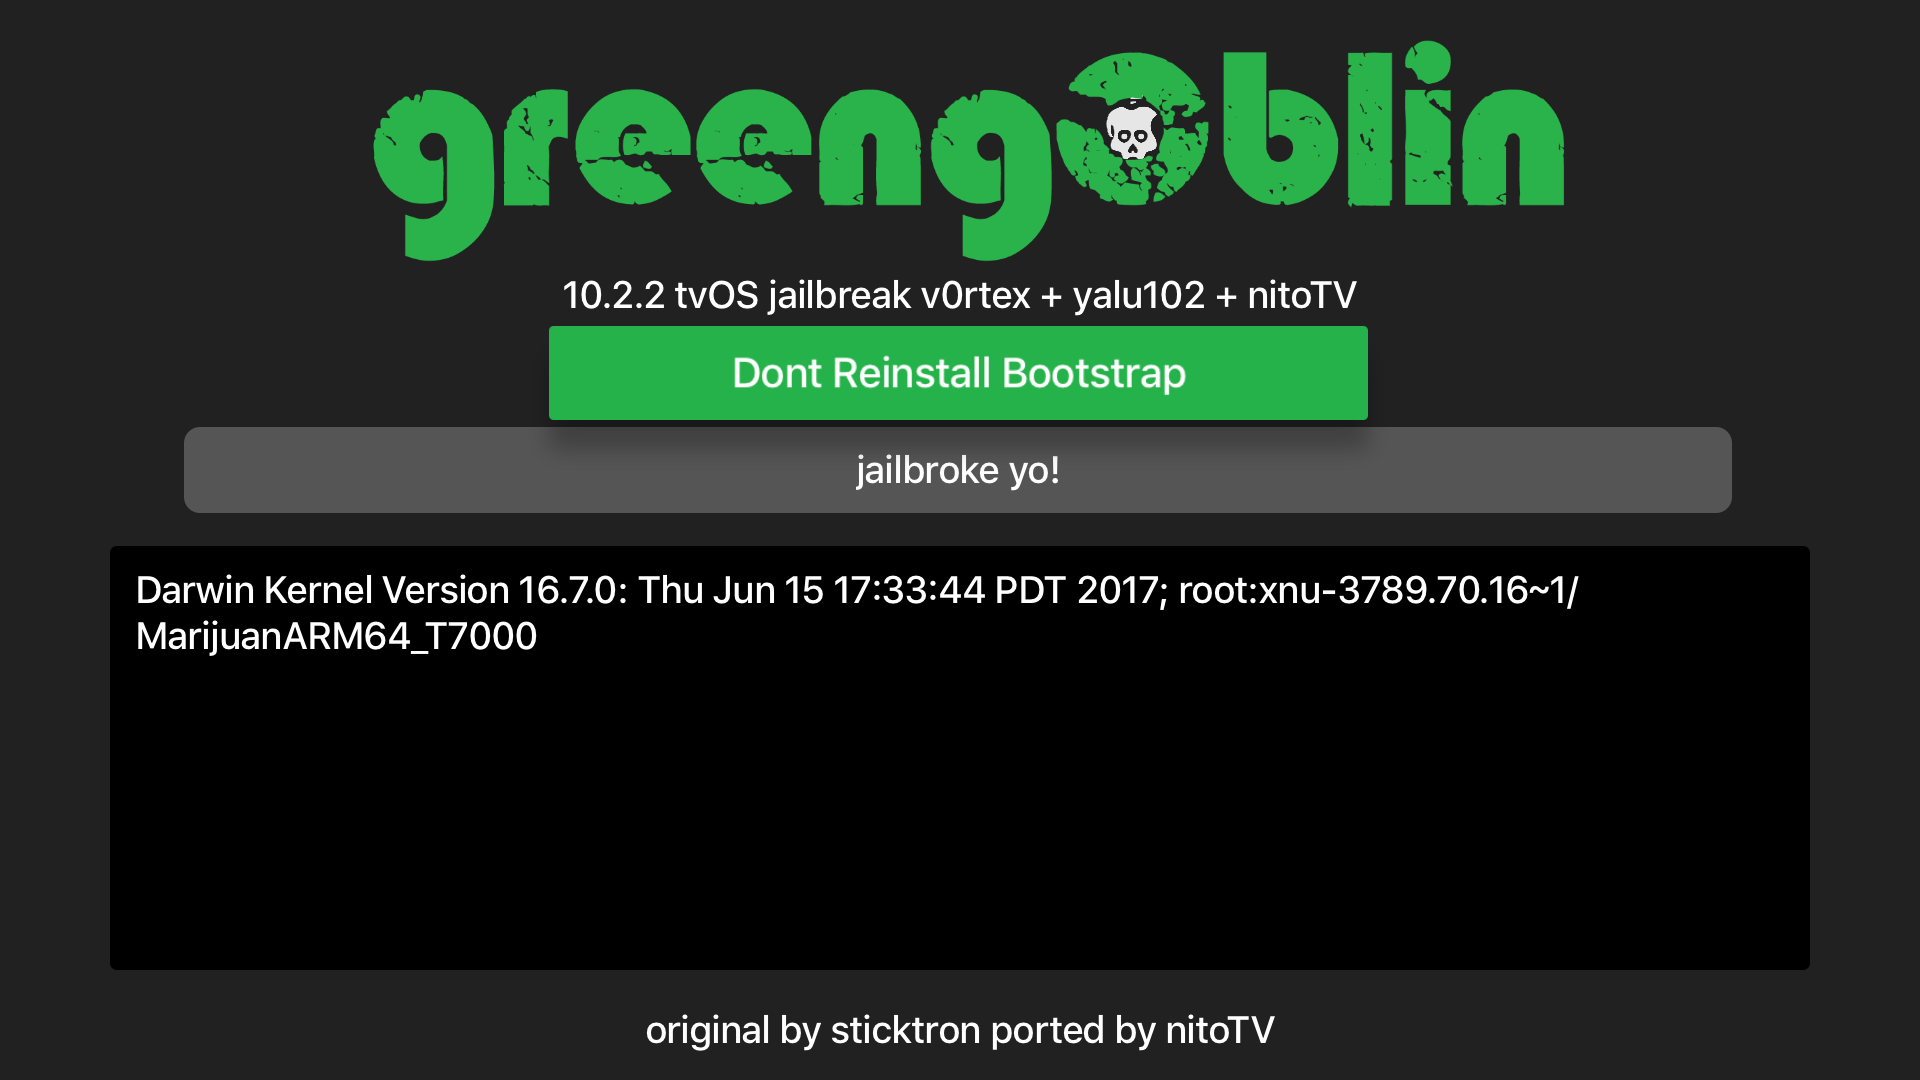 How to jailbreak greeng0blin for tvOS 10.2.2